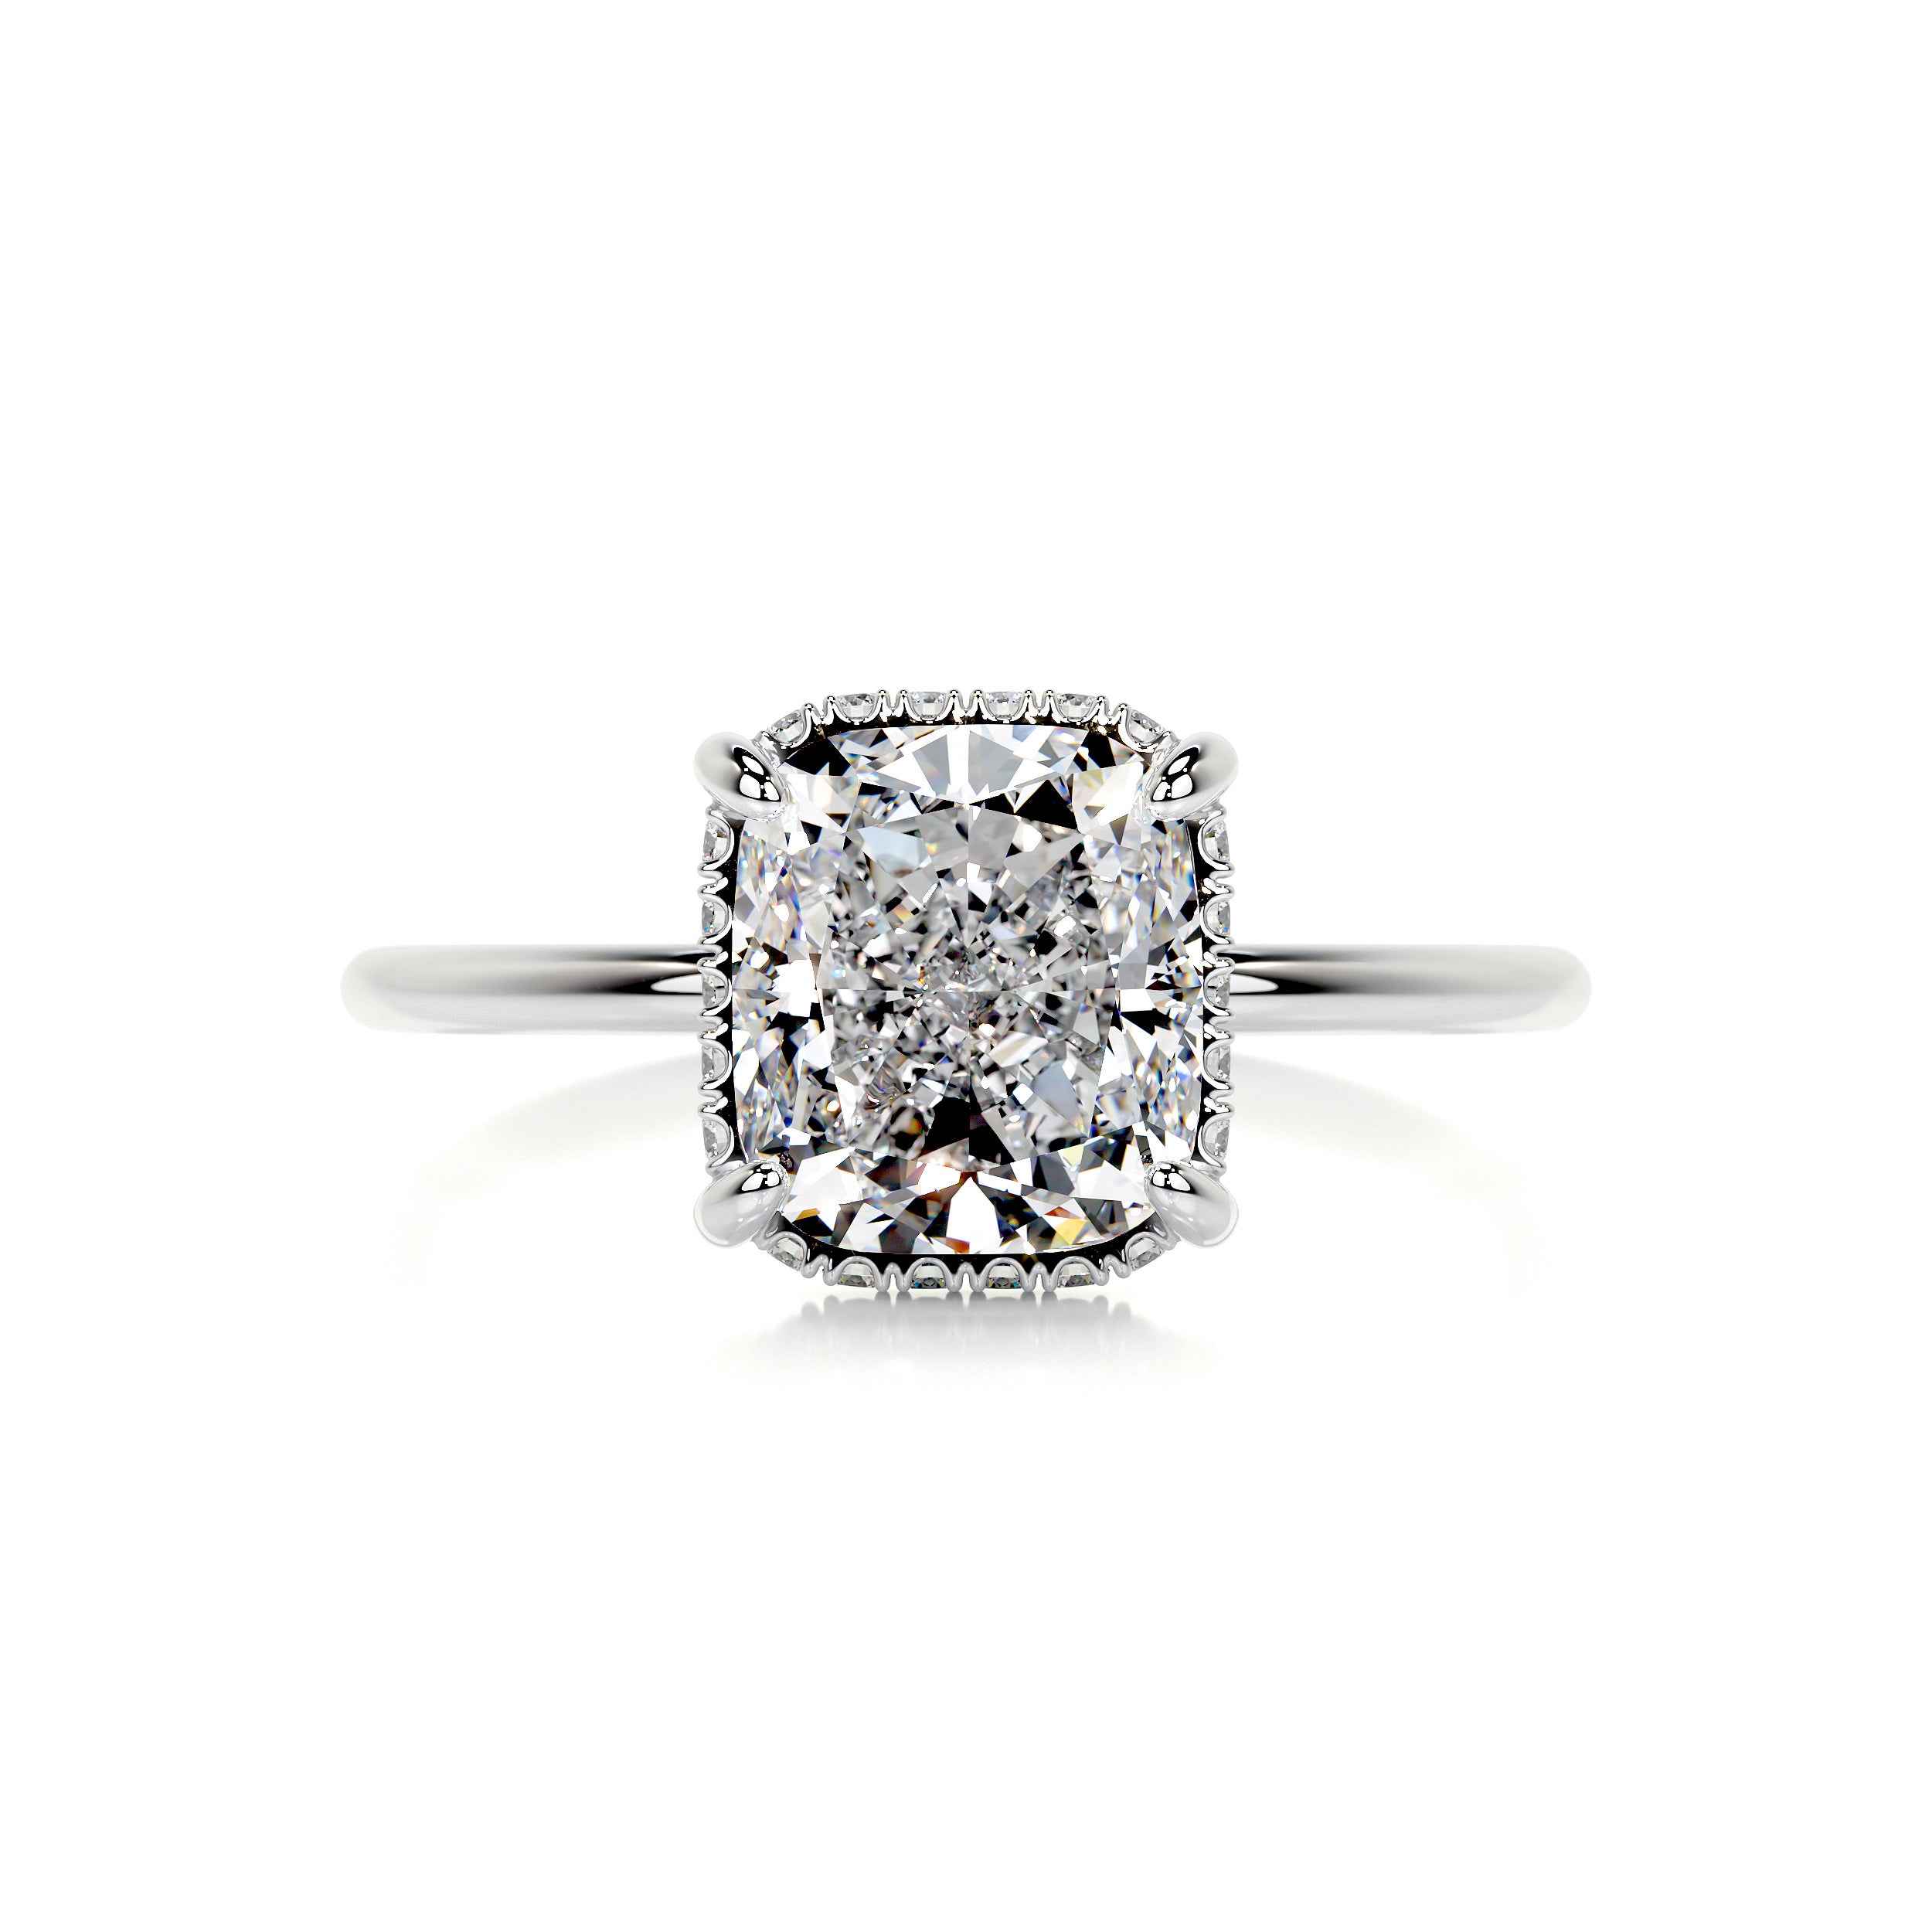 Priscilla Diamond Engagement Ring -Platinum